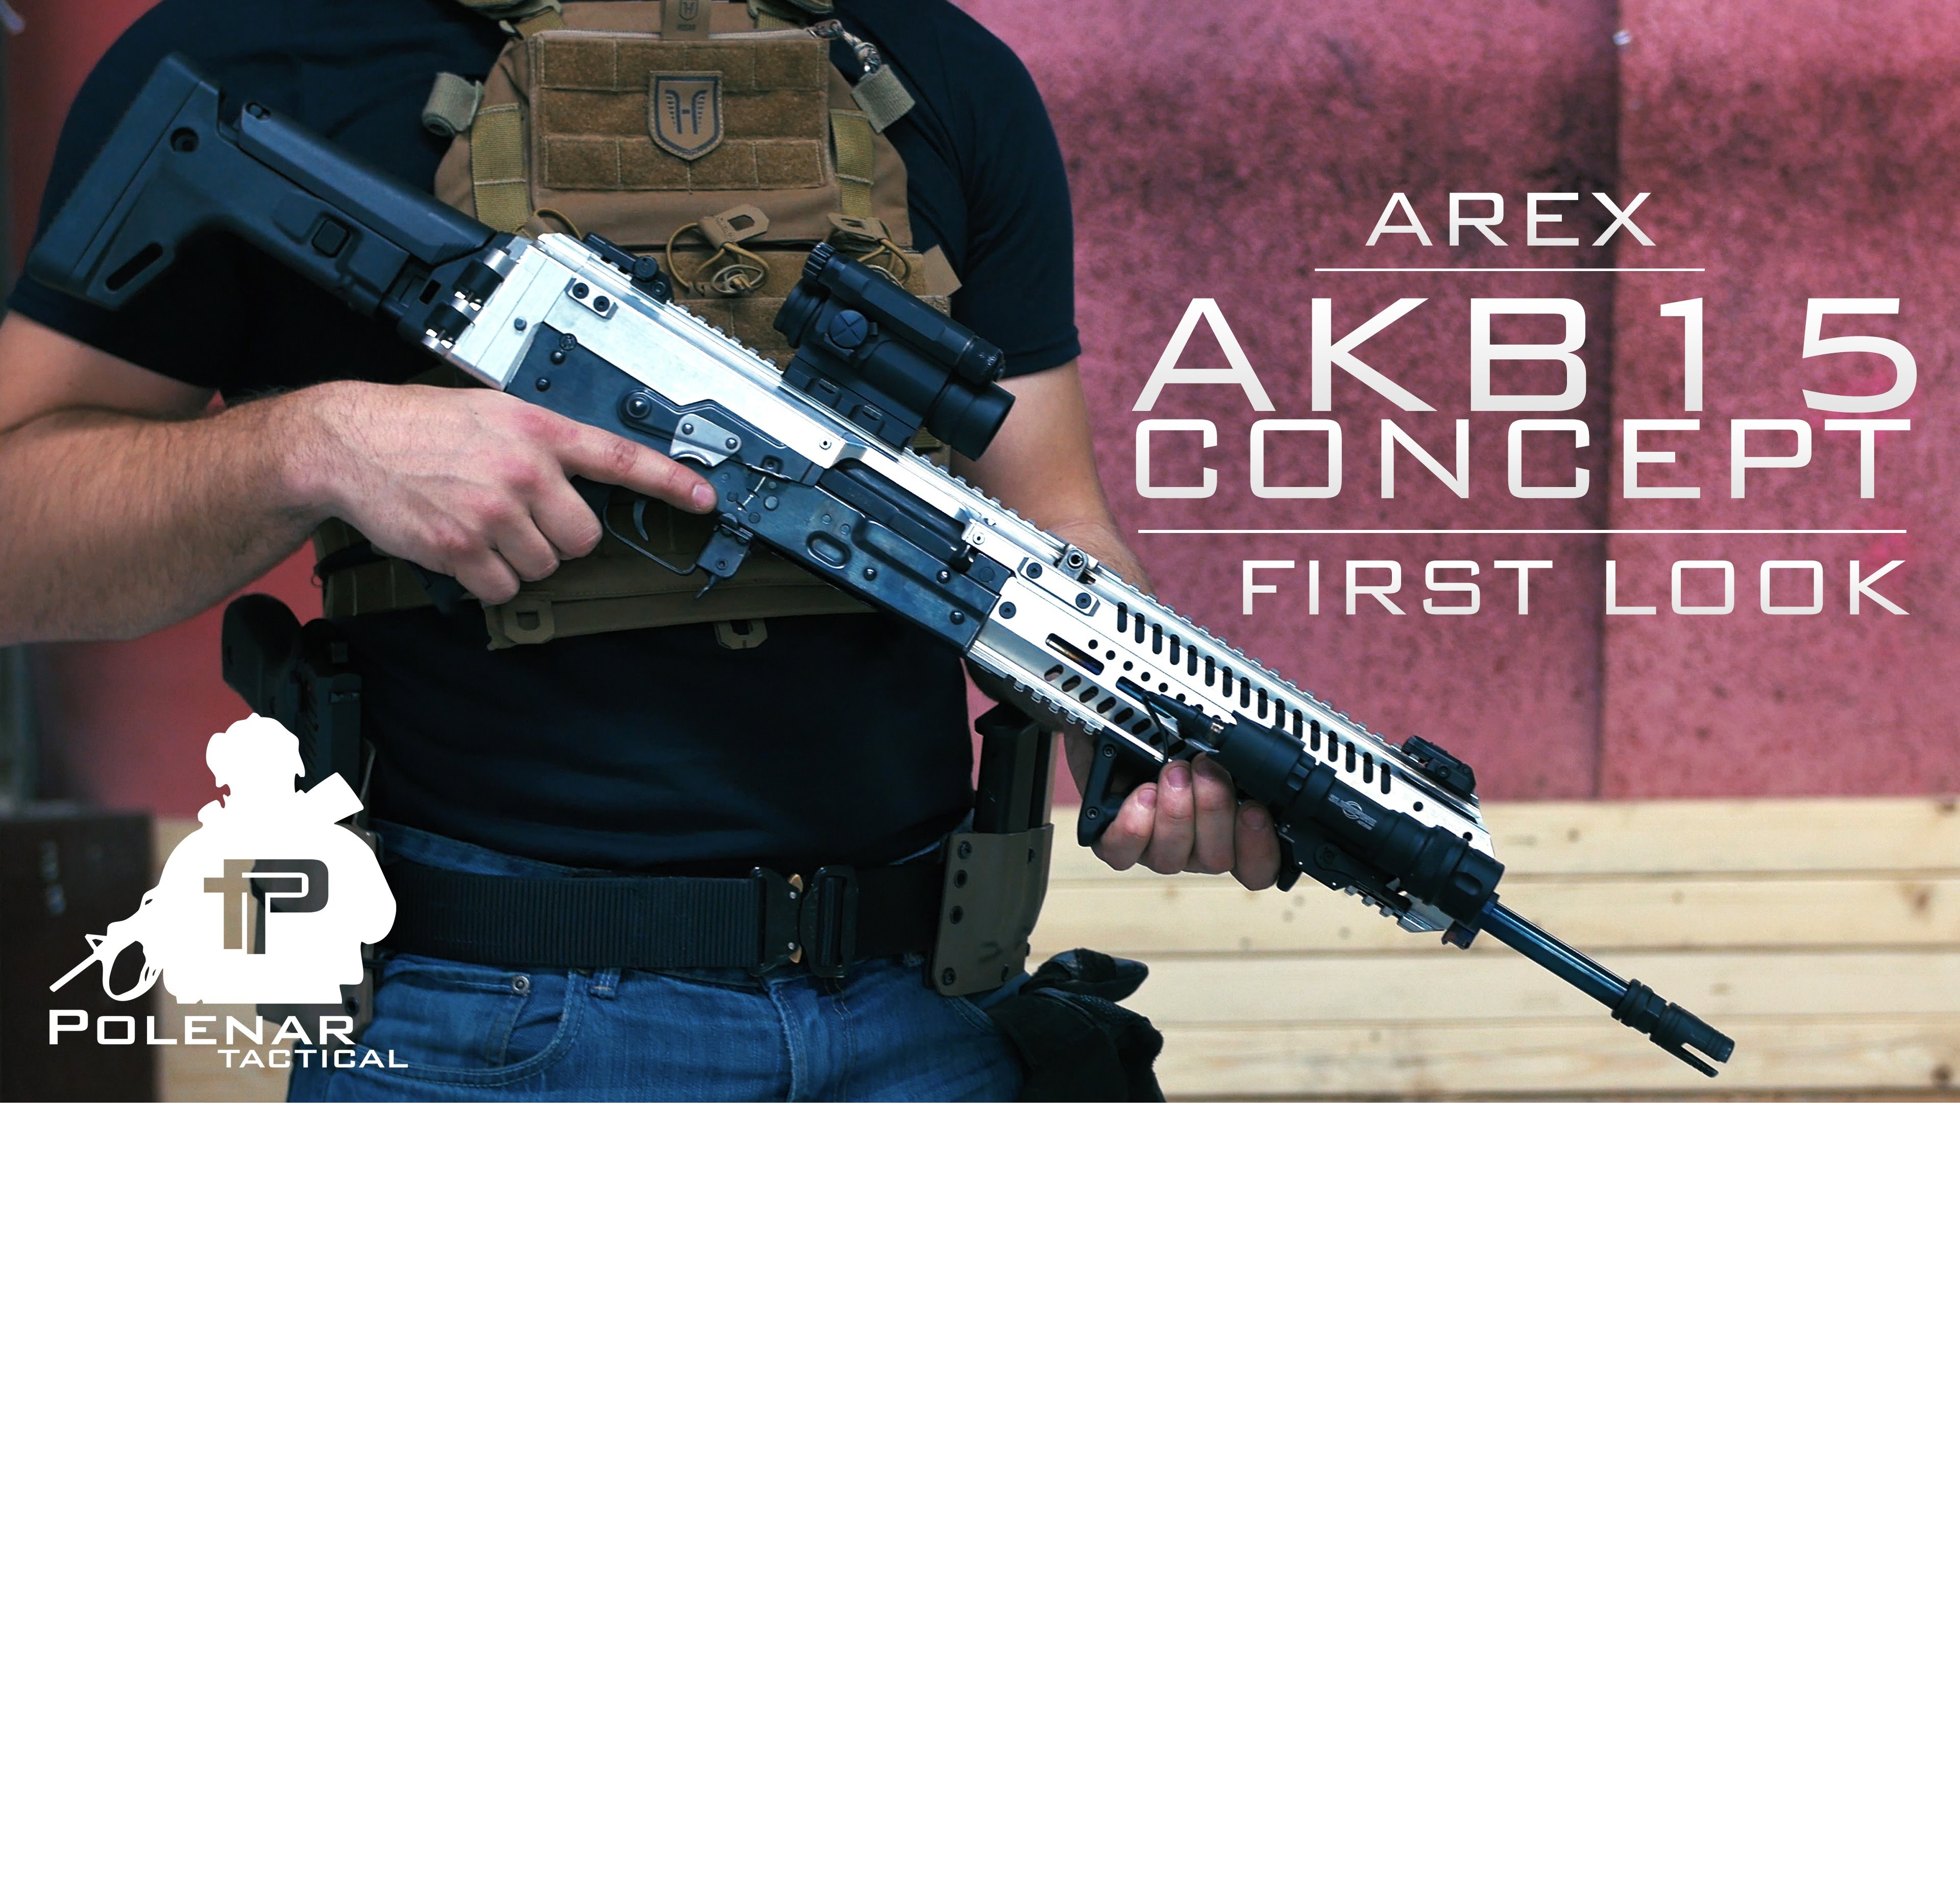 Arex AKB15